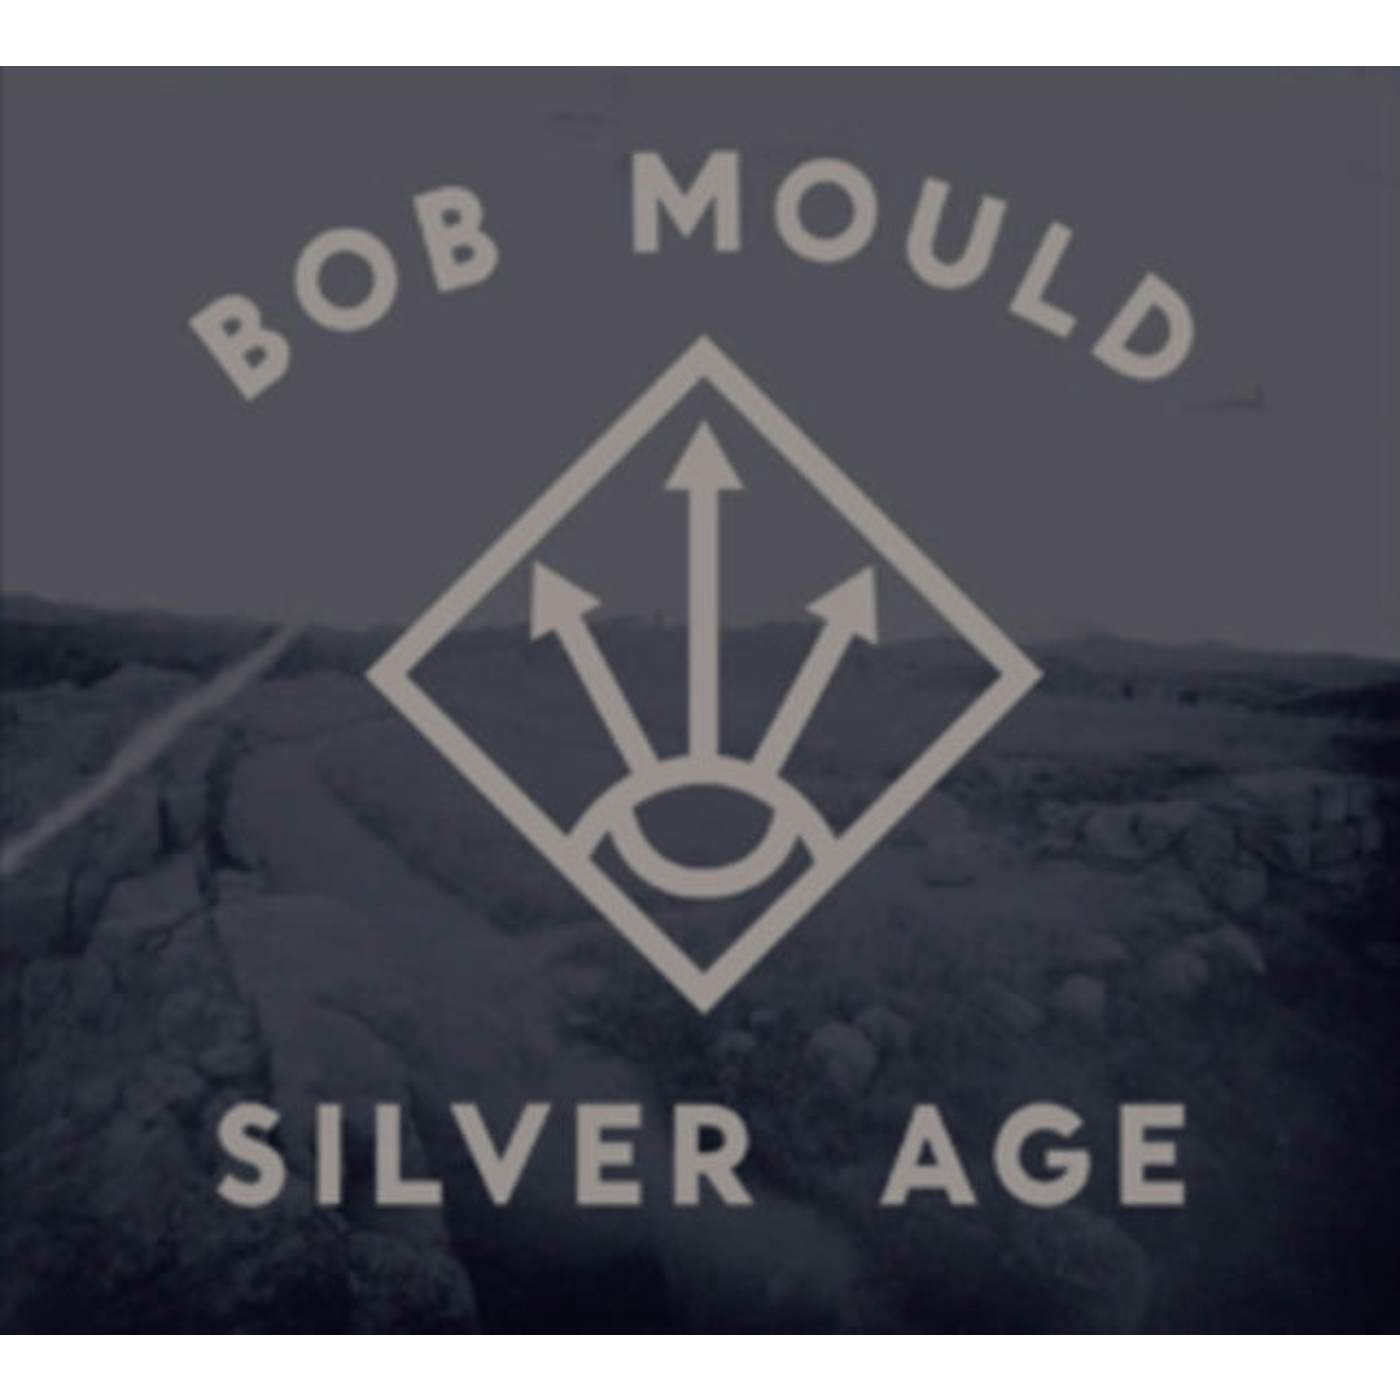 Bob Mould CD - Silver Age